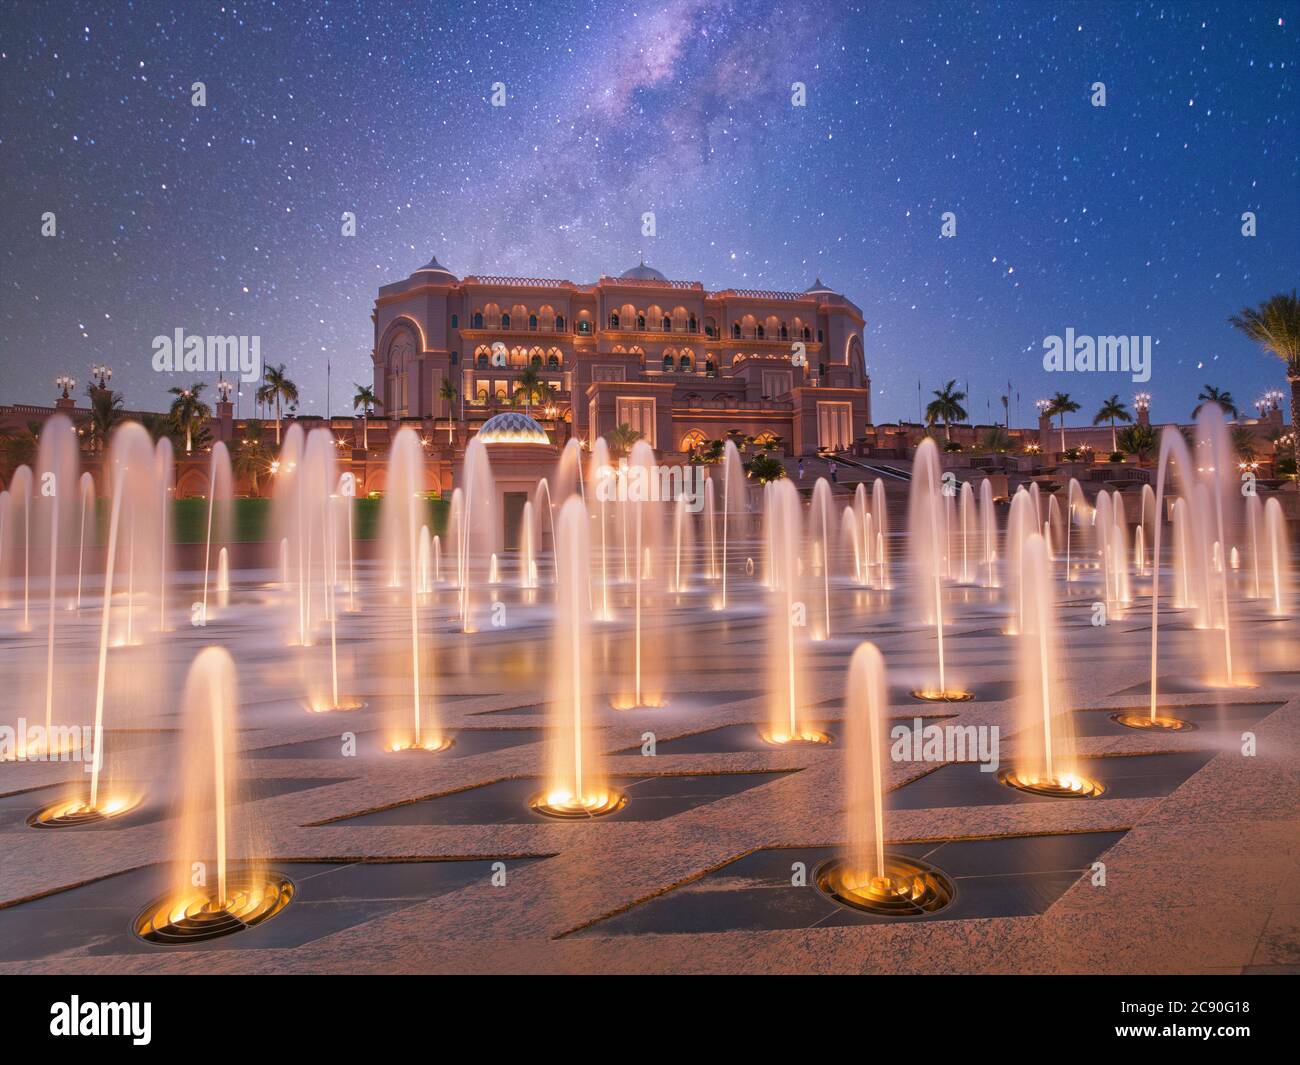 United Arab Emirates, Abu Dhabi, Fountain in front of Hotel Emirates Palace Stock Photo